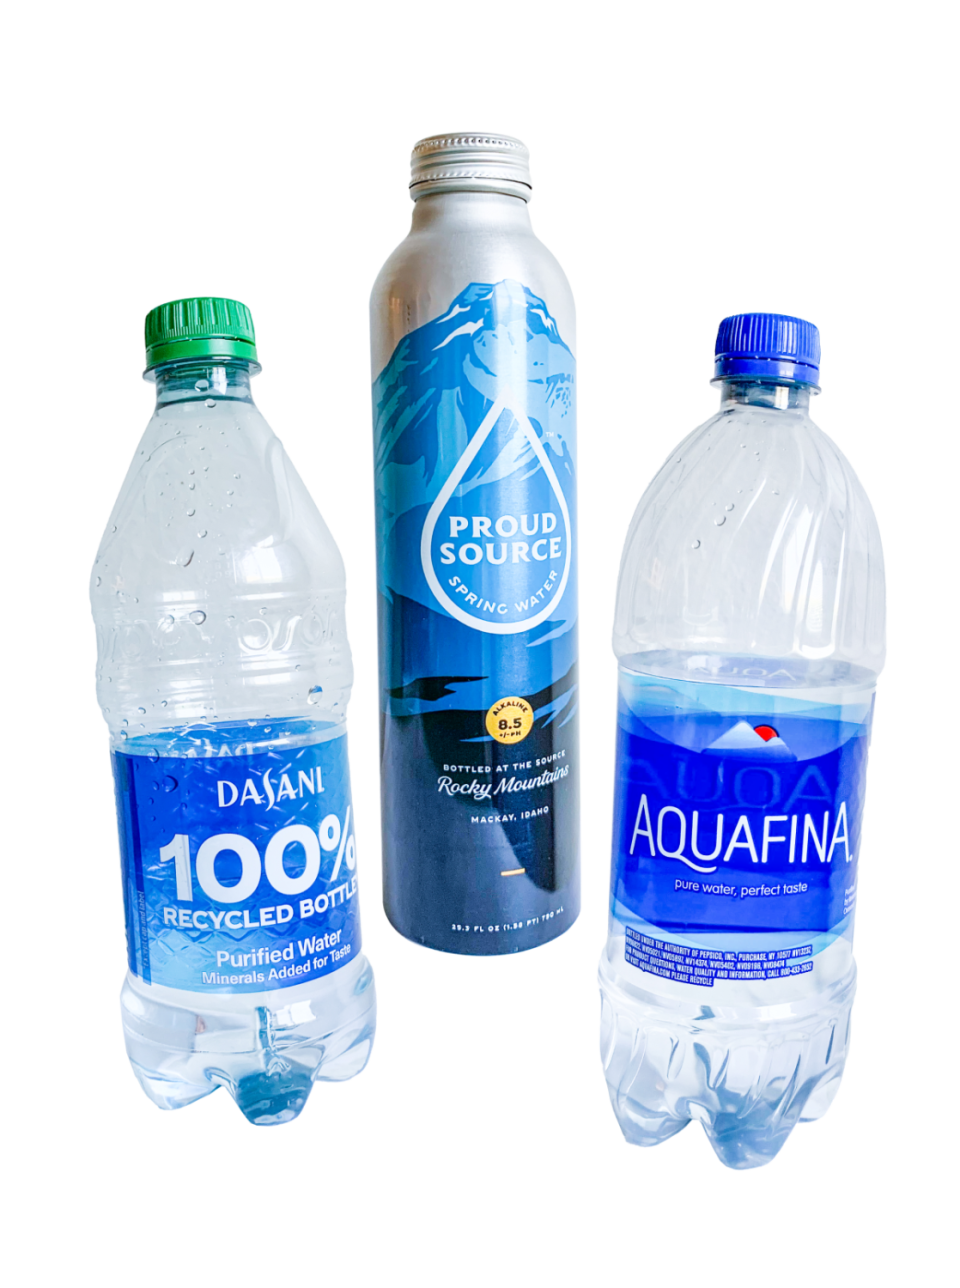 Dasani, Proud Source Spring Water, and Aquafina bottles